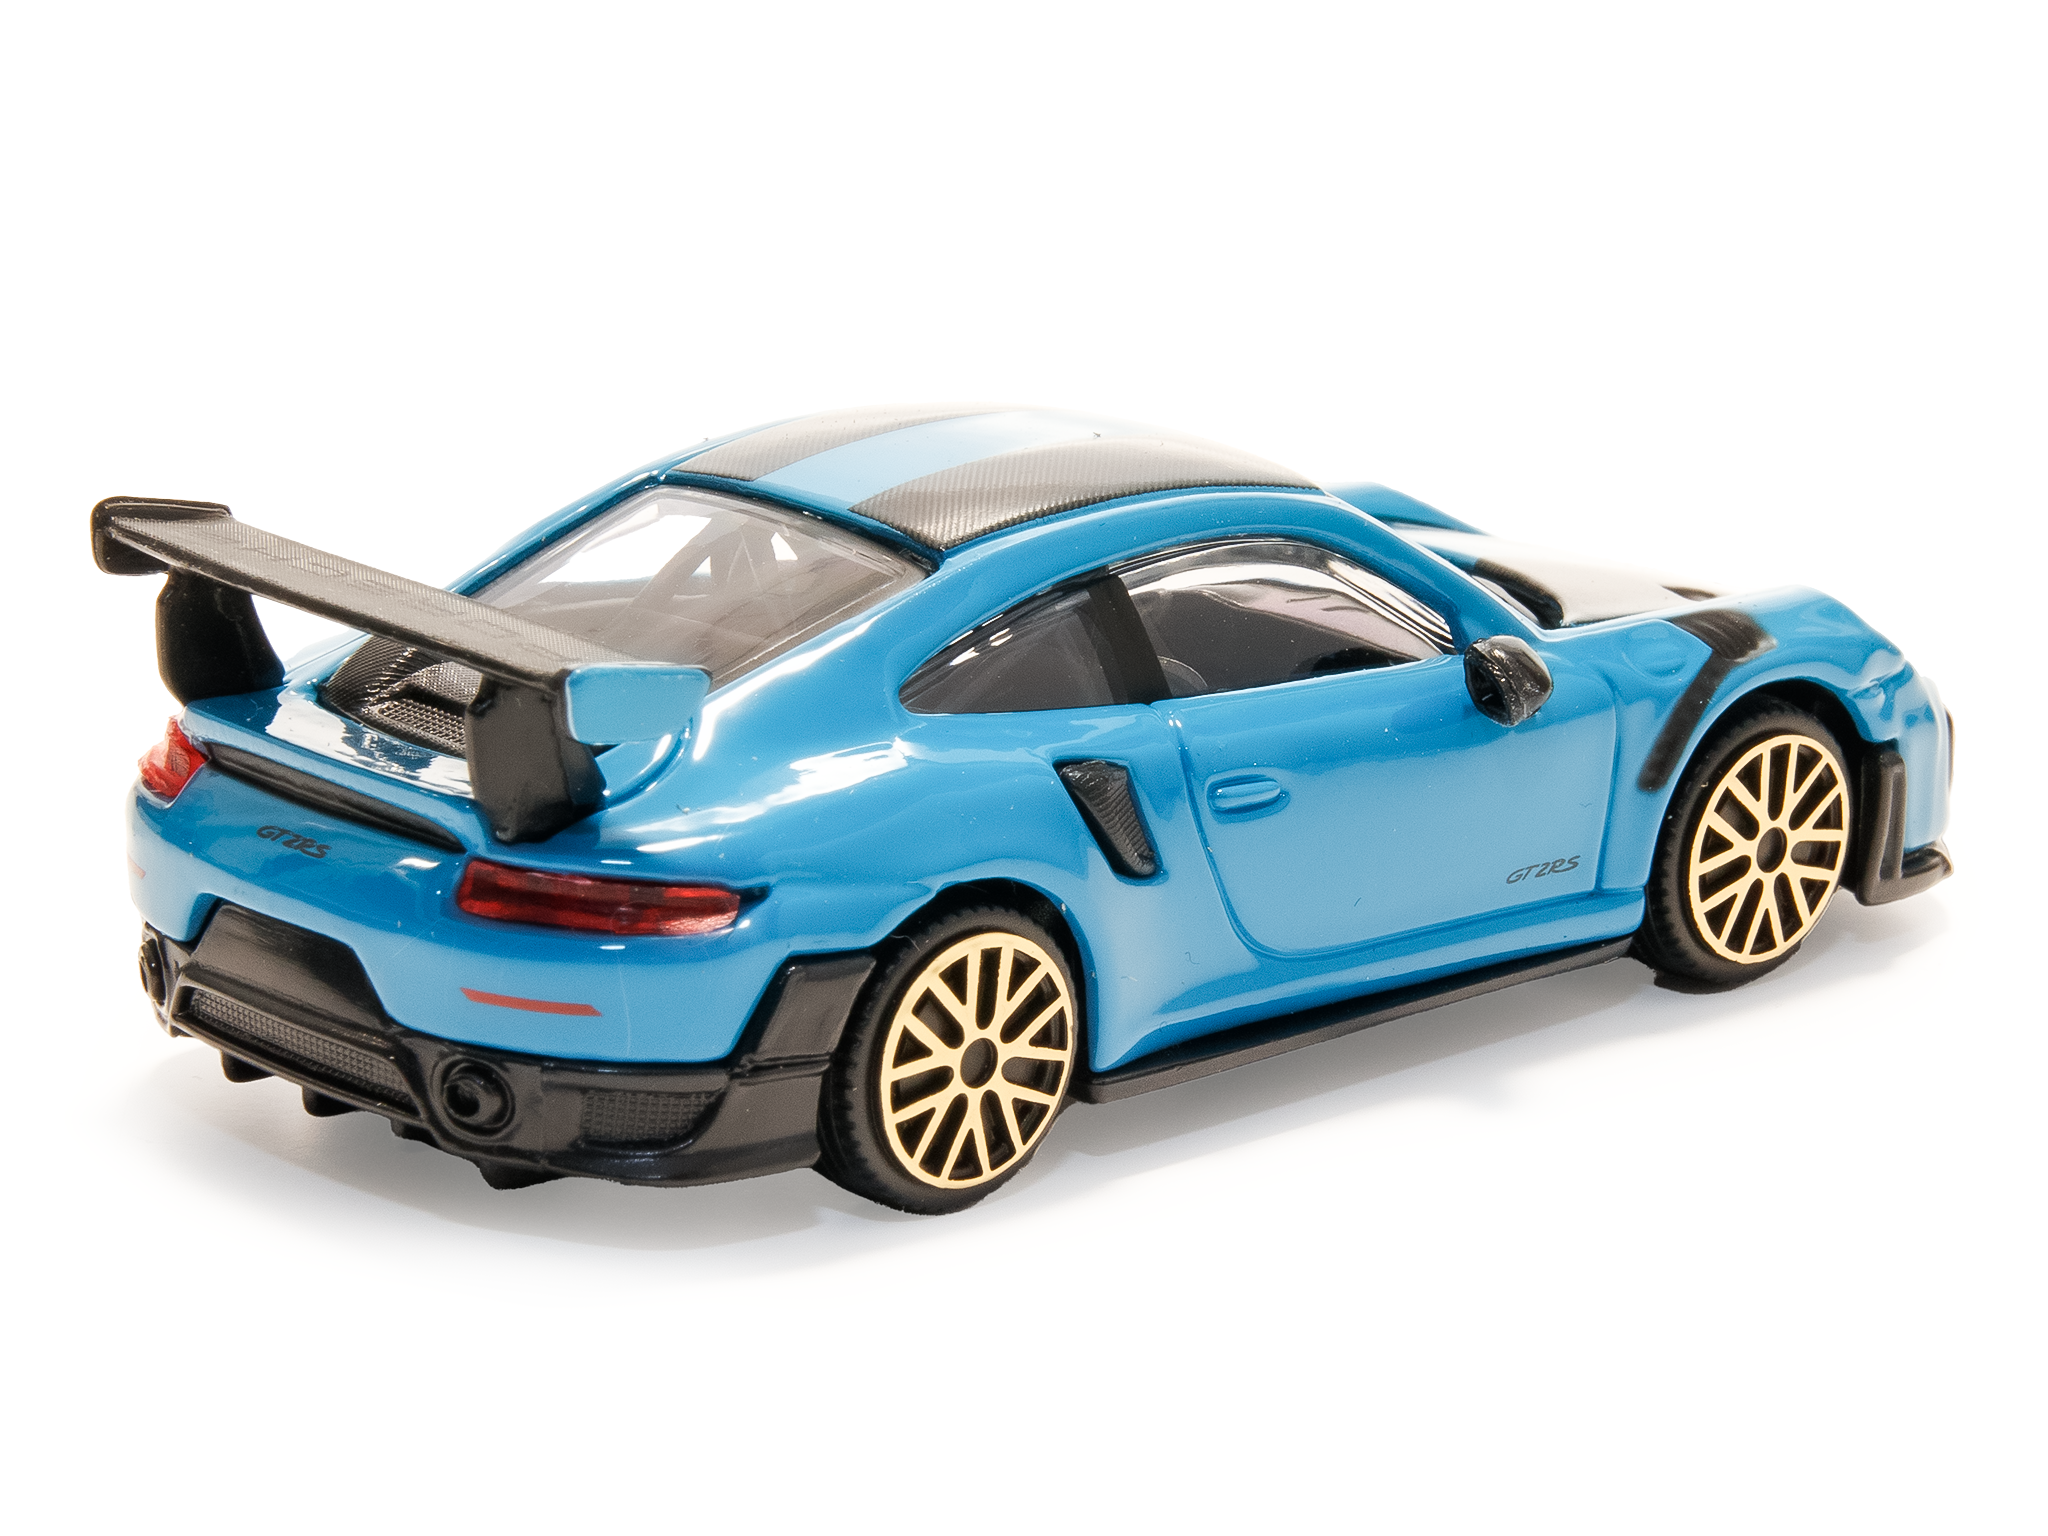 Porsche 911 GT2 RS blue - 1:43 Scale